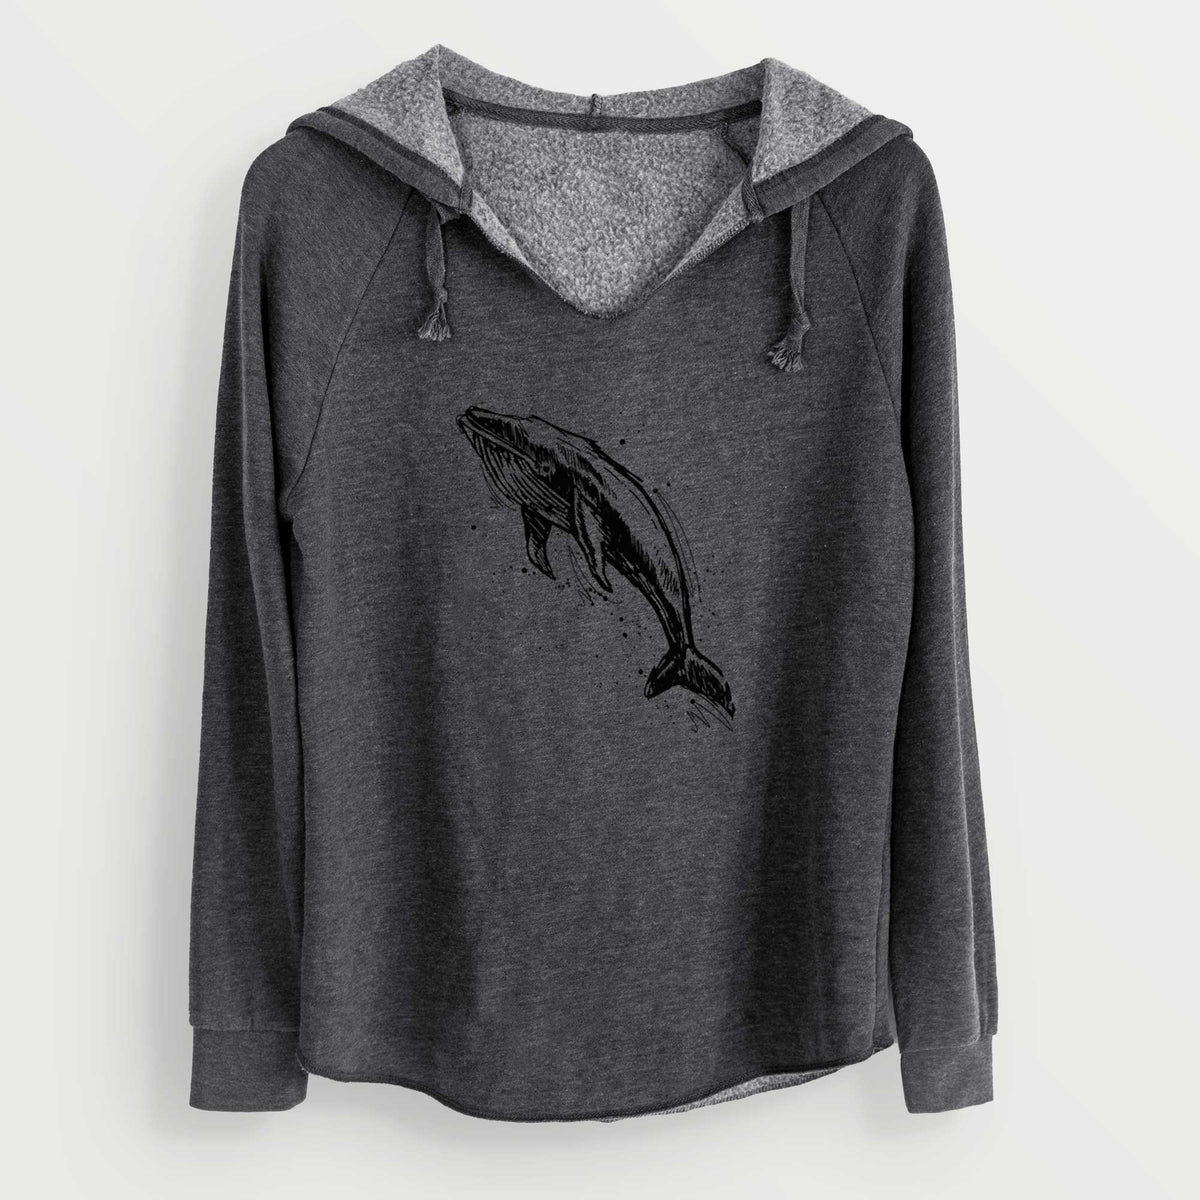 Humpback Whale - Cali Wave Hooded Sweatshirt